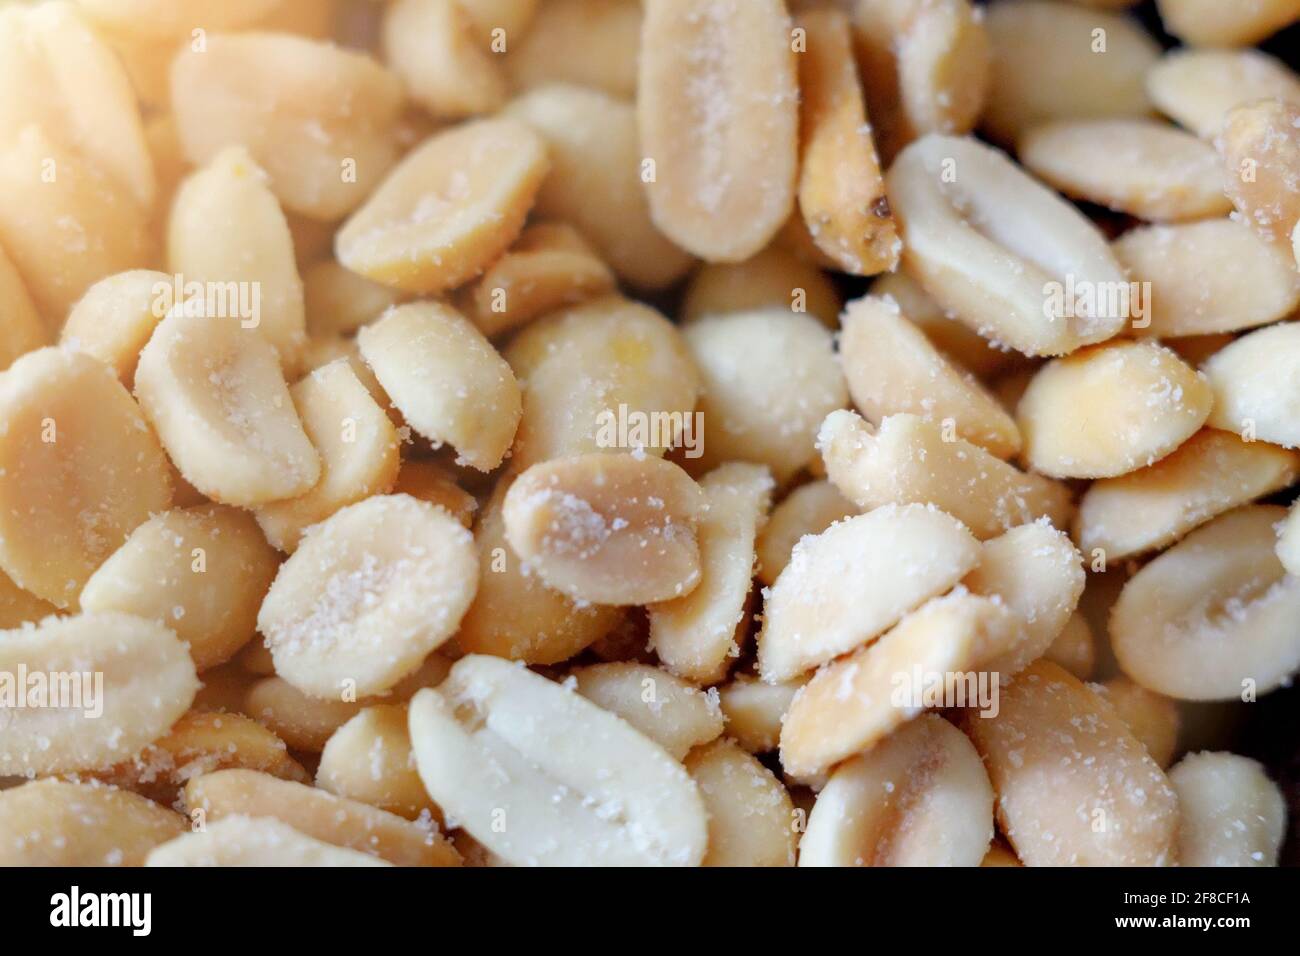 Dies ist eine gesalzene geschälte Erdnuss aus der Nähe. Nützliche NUTS.Hintergrund. Draufsicht Stockfoto